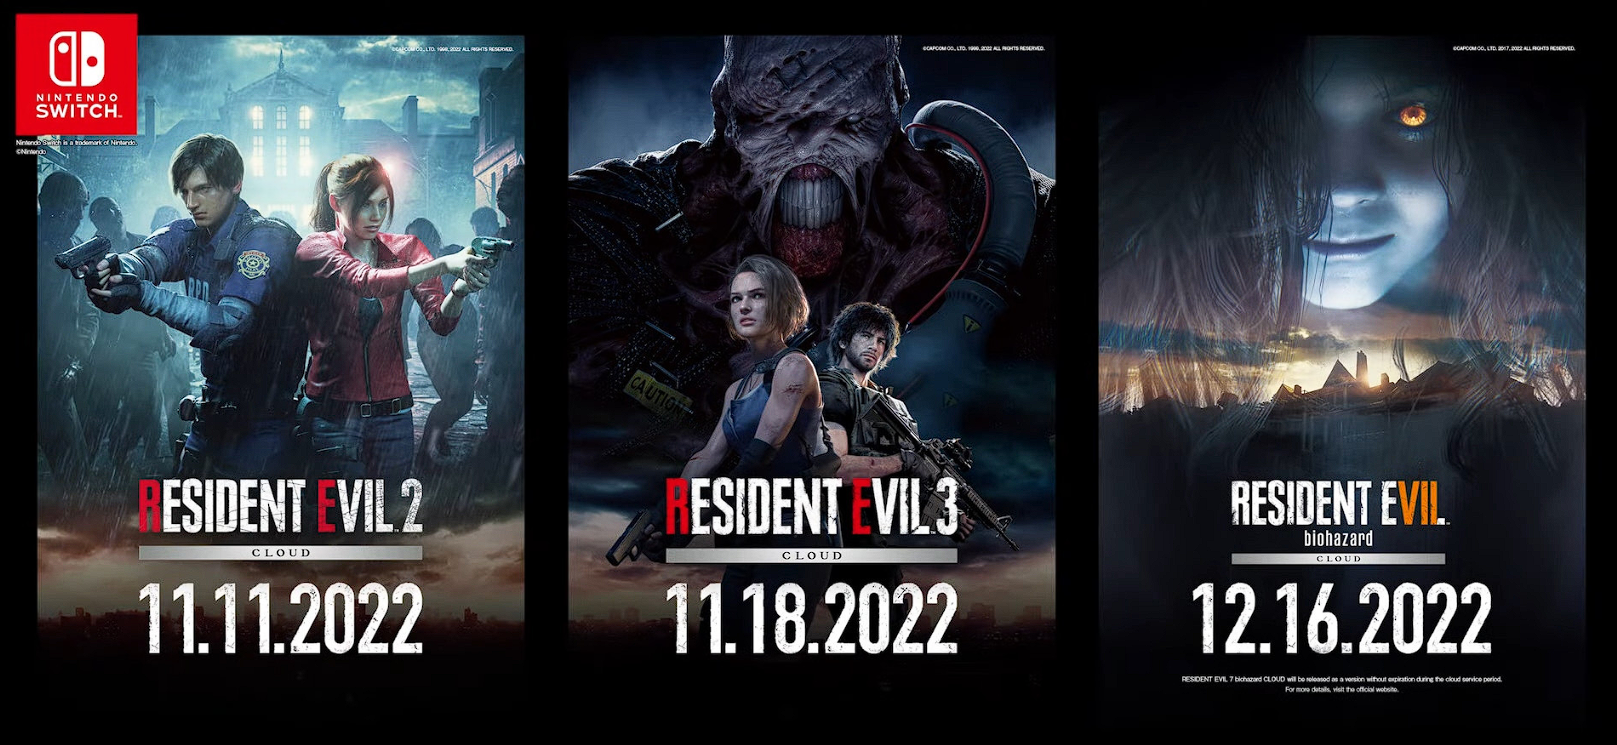 Capcom kündigte die Veröffentlichung der Remakes von Resident Evil 2 und 3 für Nintendo Switch im November an, und Resident Evil 7 soll am 16. Dezember erwartet werden.-2